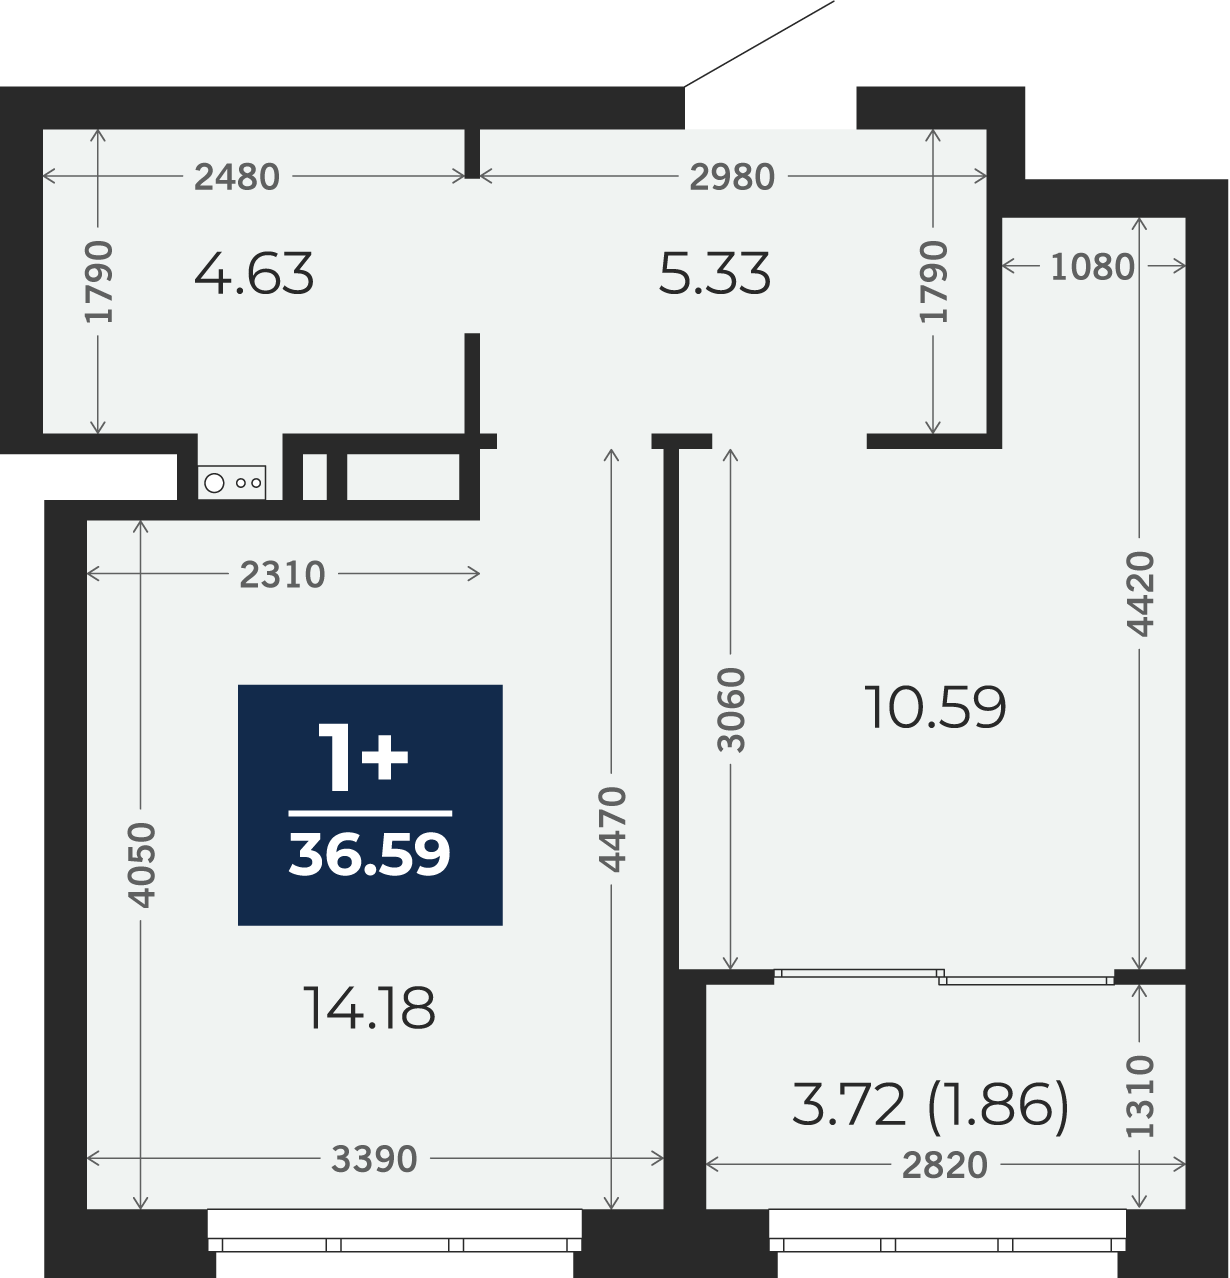 Квартира № 52, 1-комнатная, 36.59 кв. м, 4 этаж